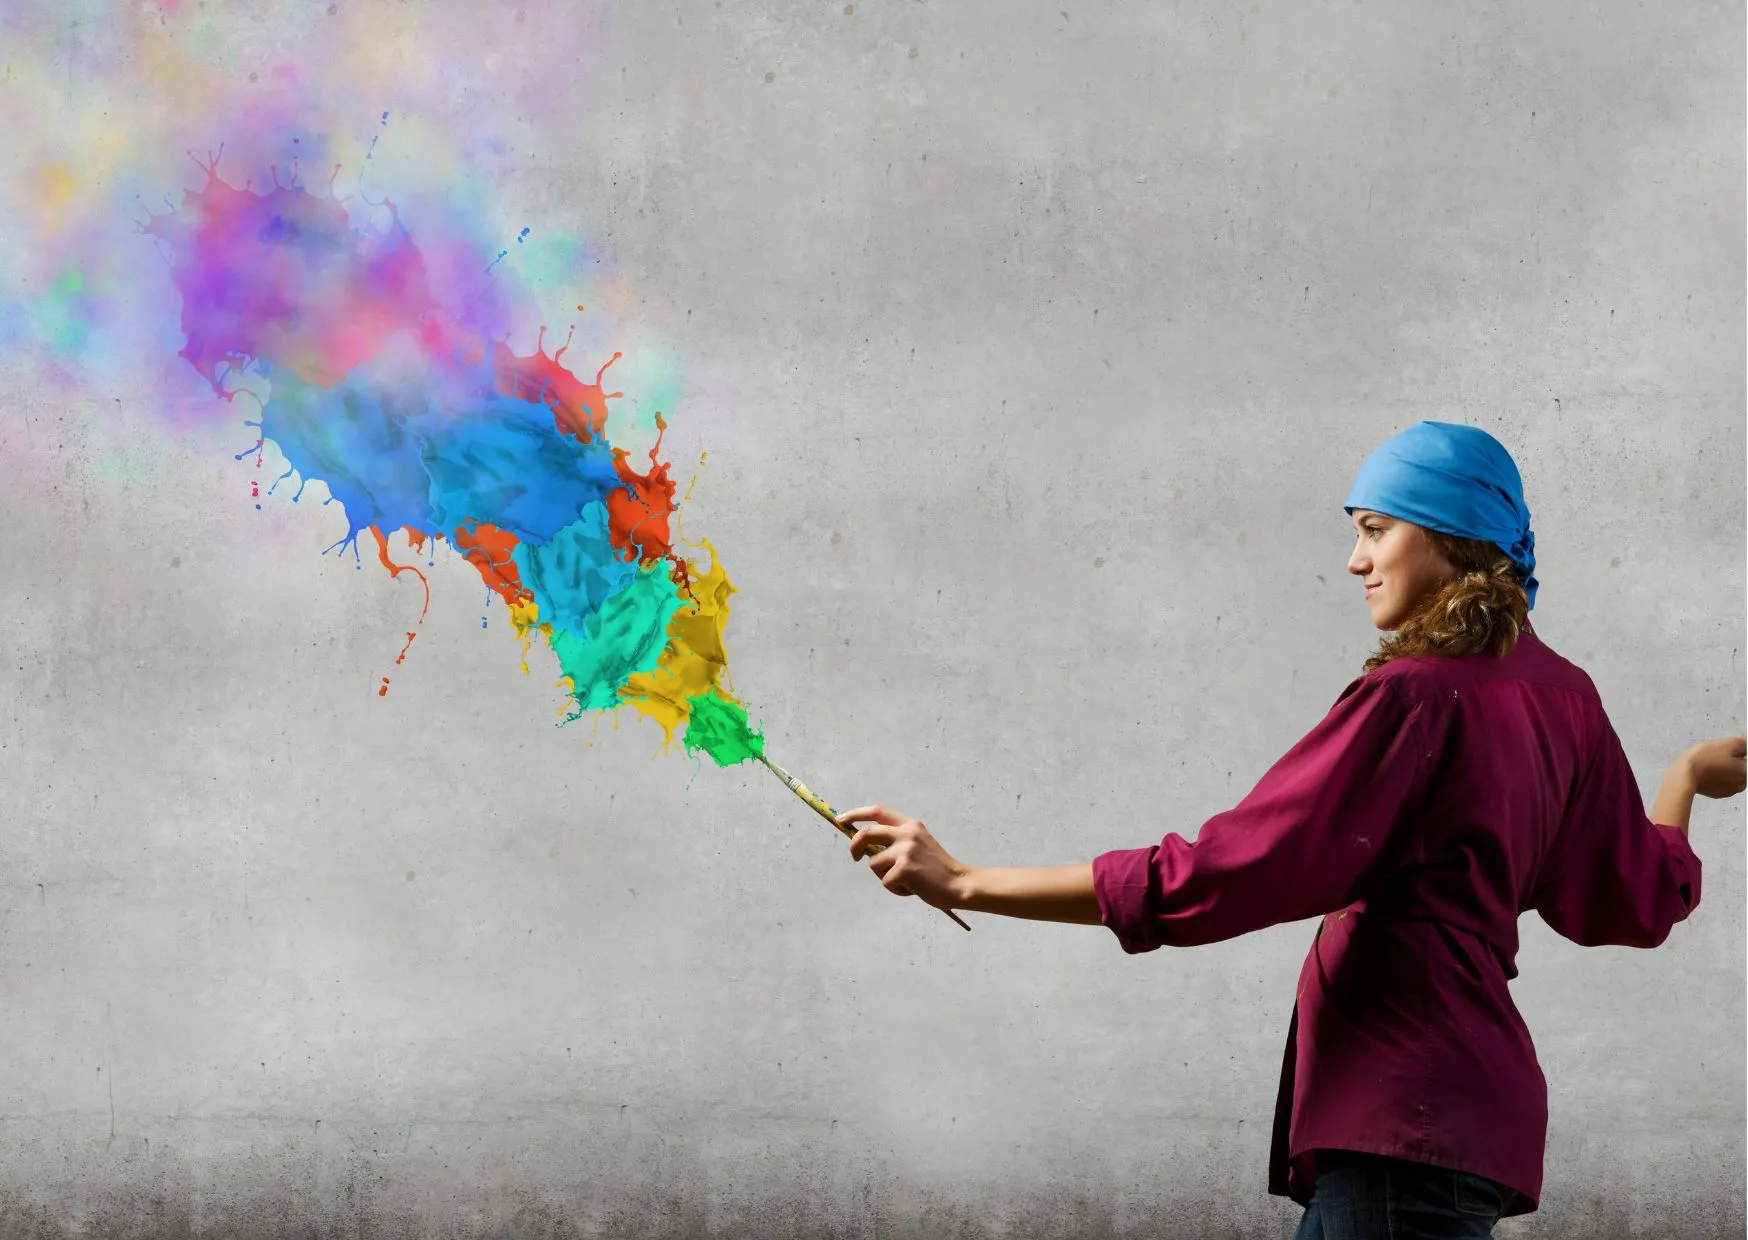 Eine Person entfaltet ihre Kreativität durch Kunst, indem sie mit einem Pinsel lebendige Farben in die Luft malt, ein Symbol für Selbstfindung und die Entdeckung eigener Ausdrucksmöglichkeiten.